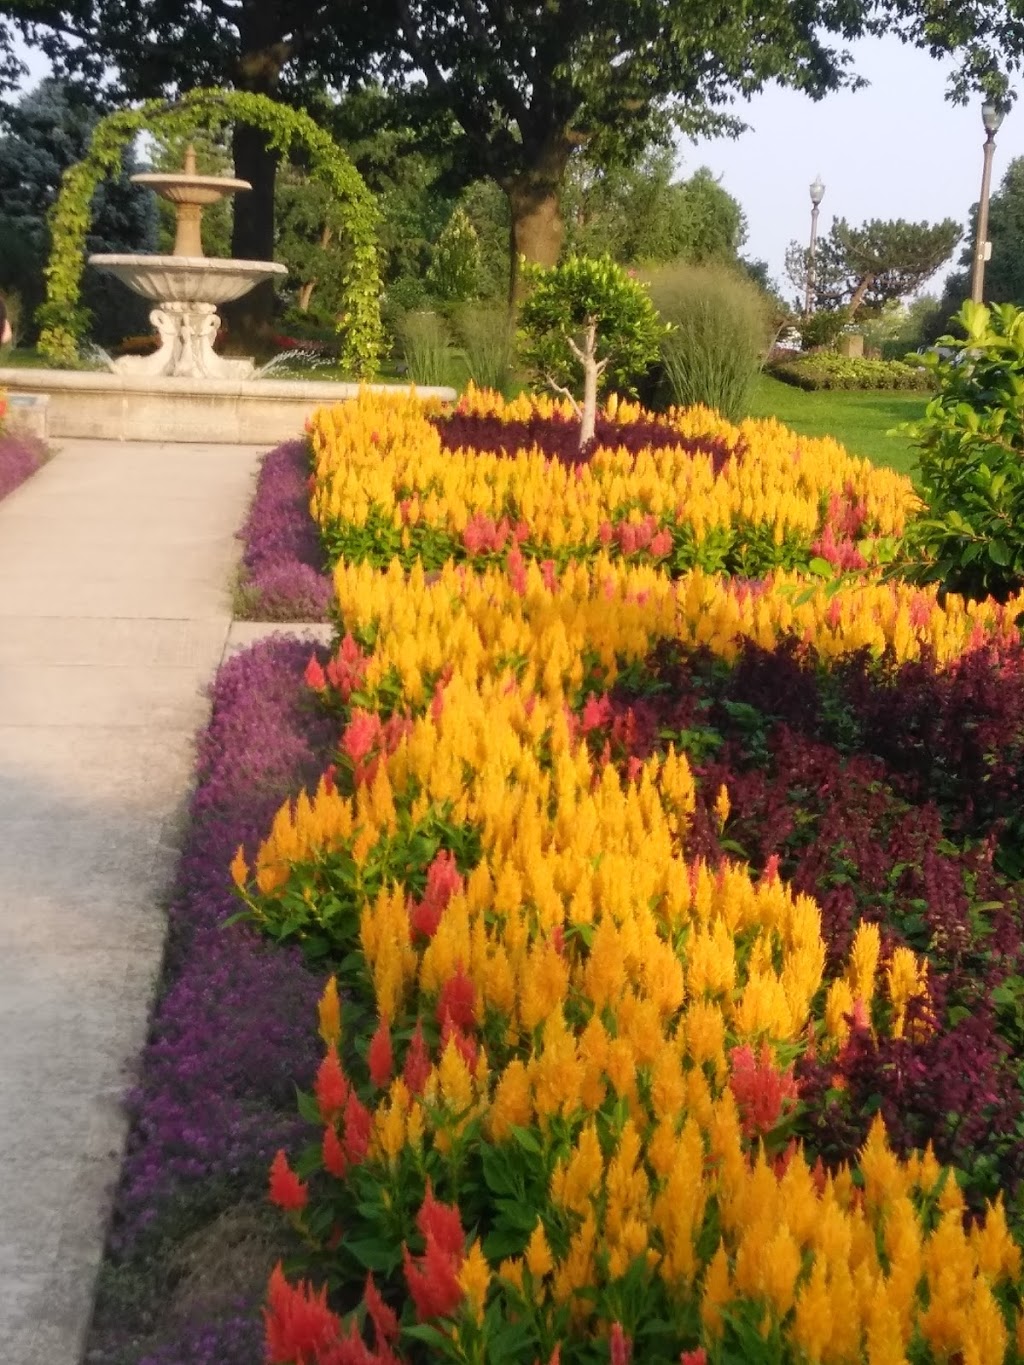 Rockway Gardens | park | 11 Floral Crescent, Kitchener, ON N2G 2N9, Canada | 5197454669 OR +1 519-745-4669